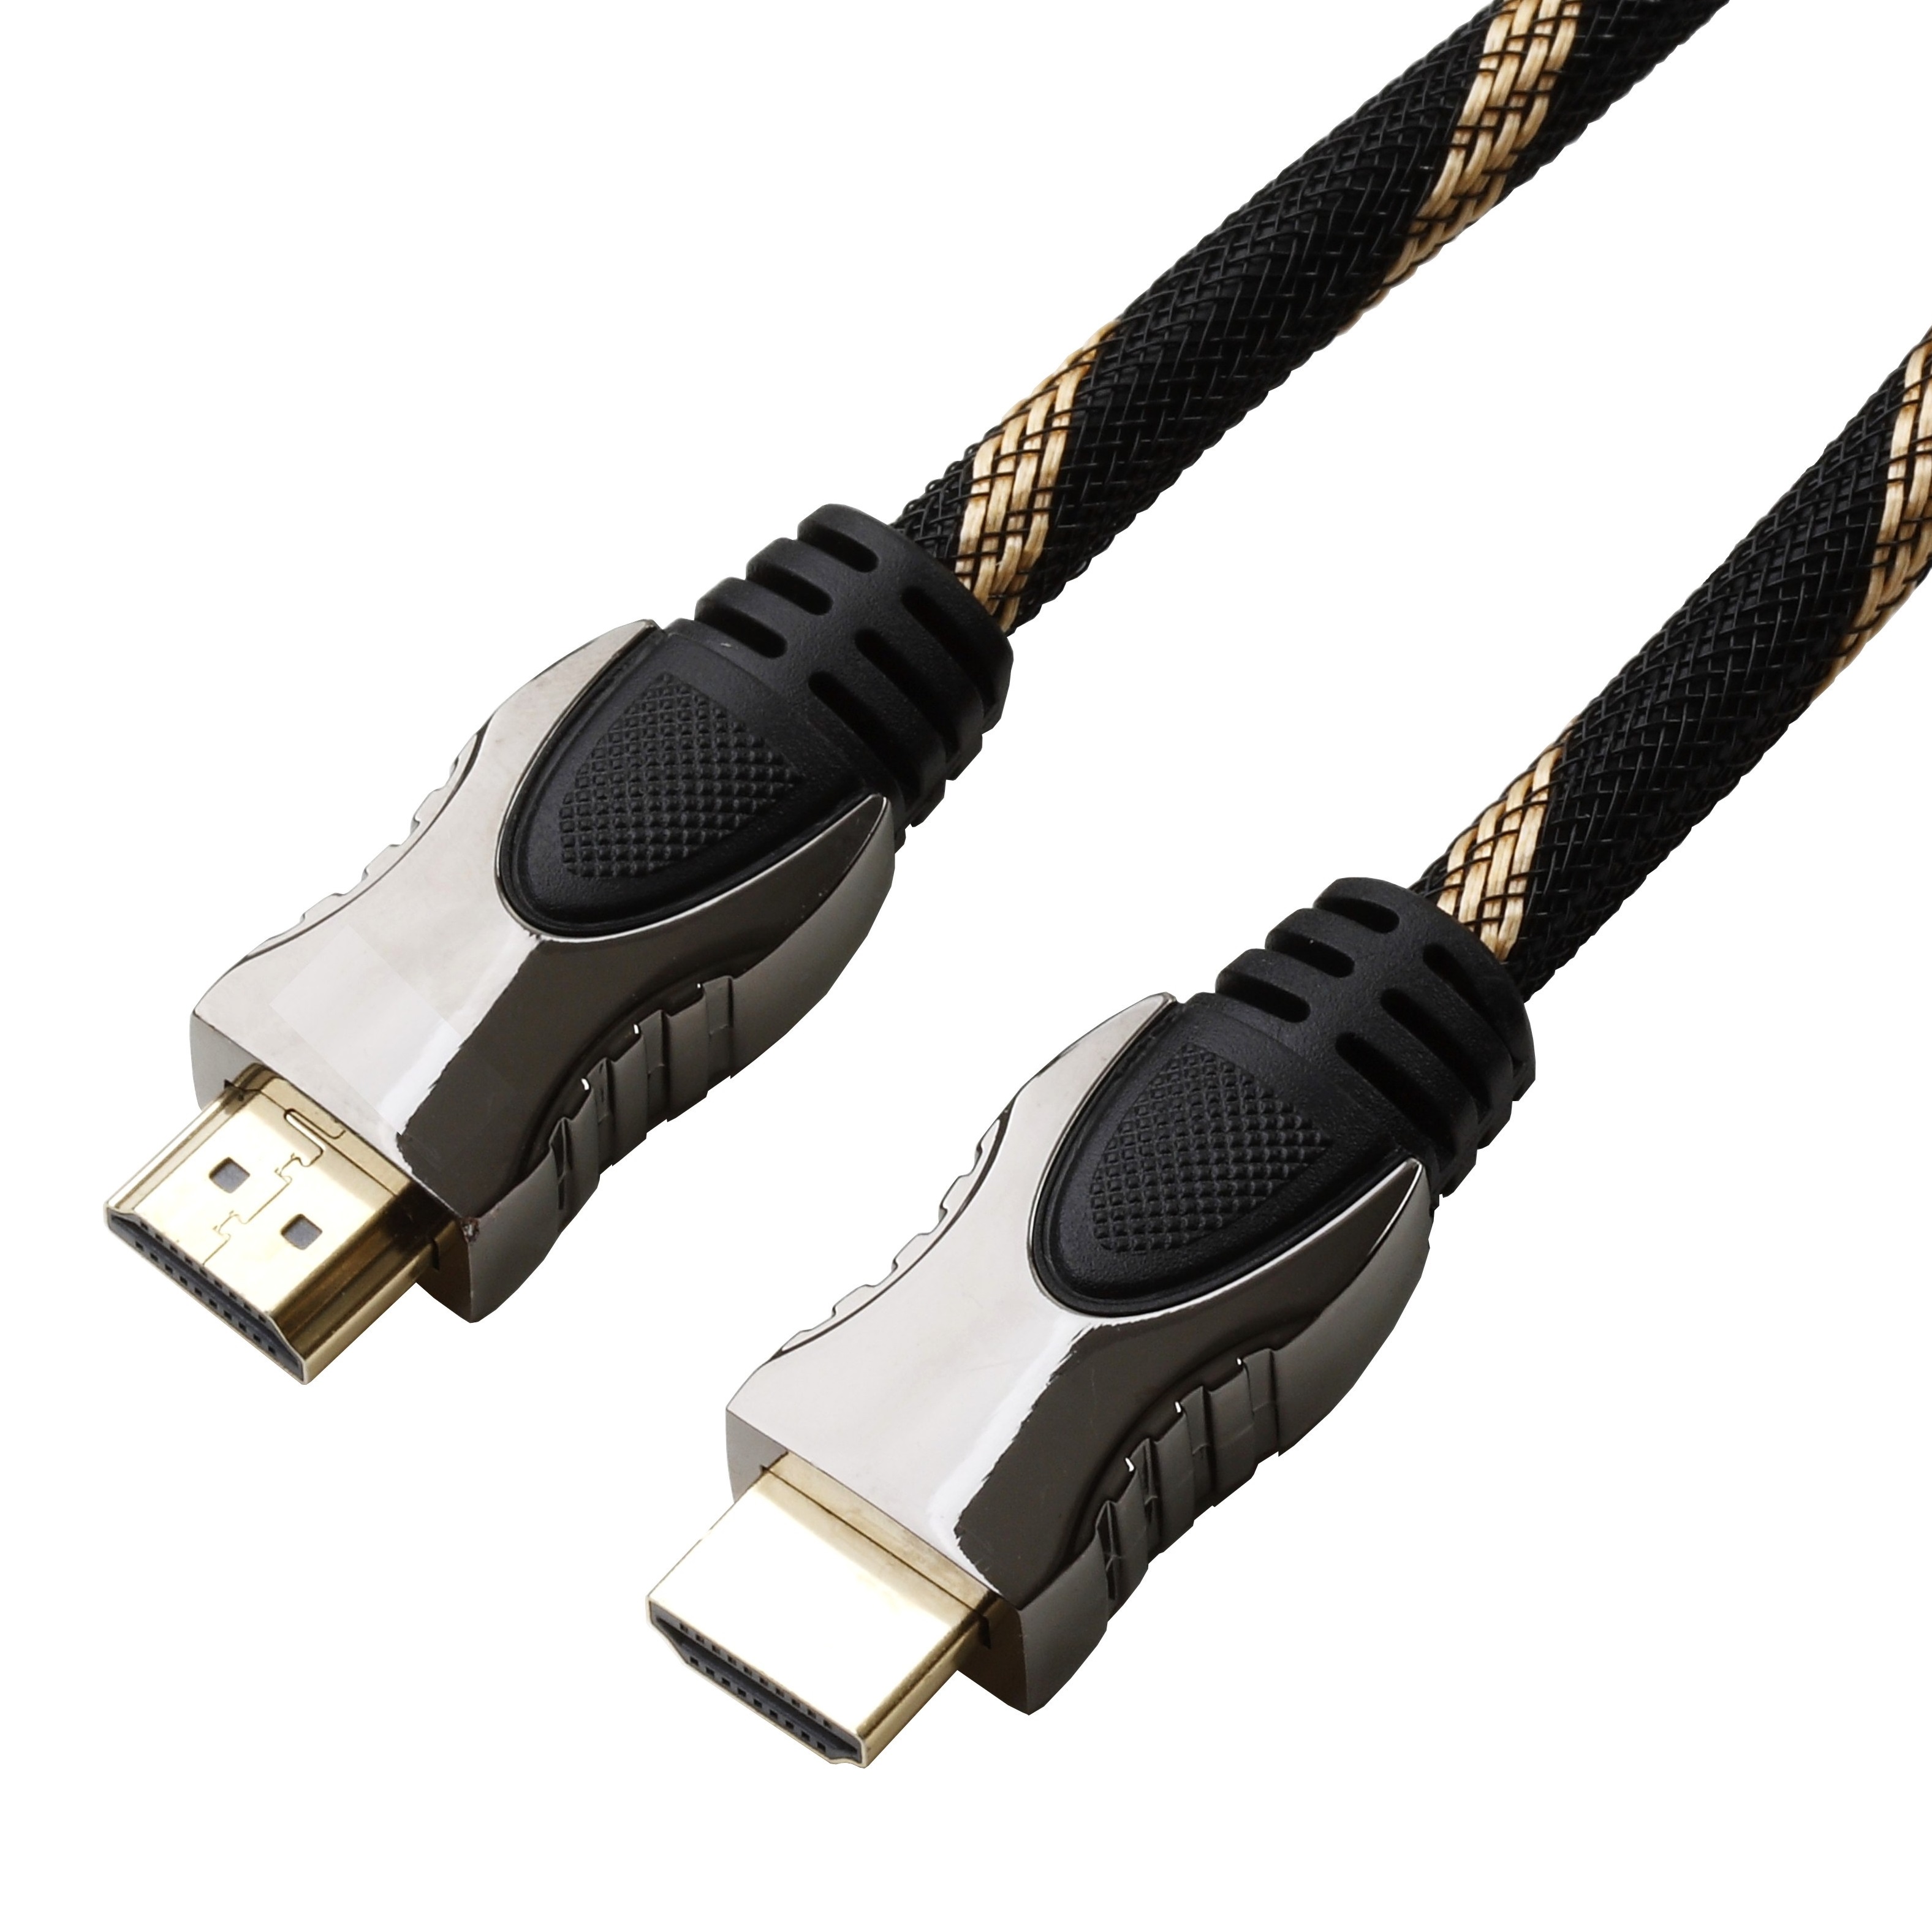 Reekin HDMI Kabel 15,0 Meter NEU 1,33€/m High Speed with Ethernet FULL HD 